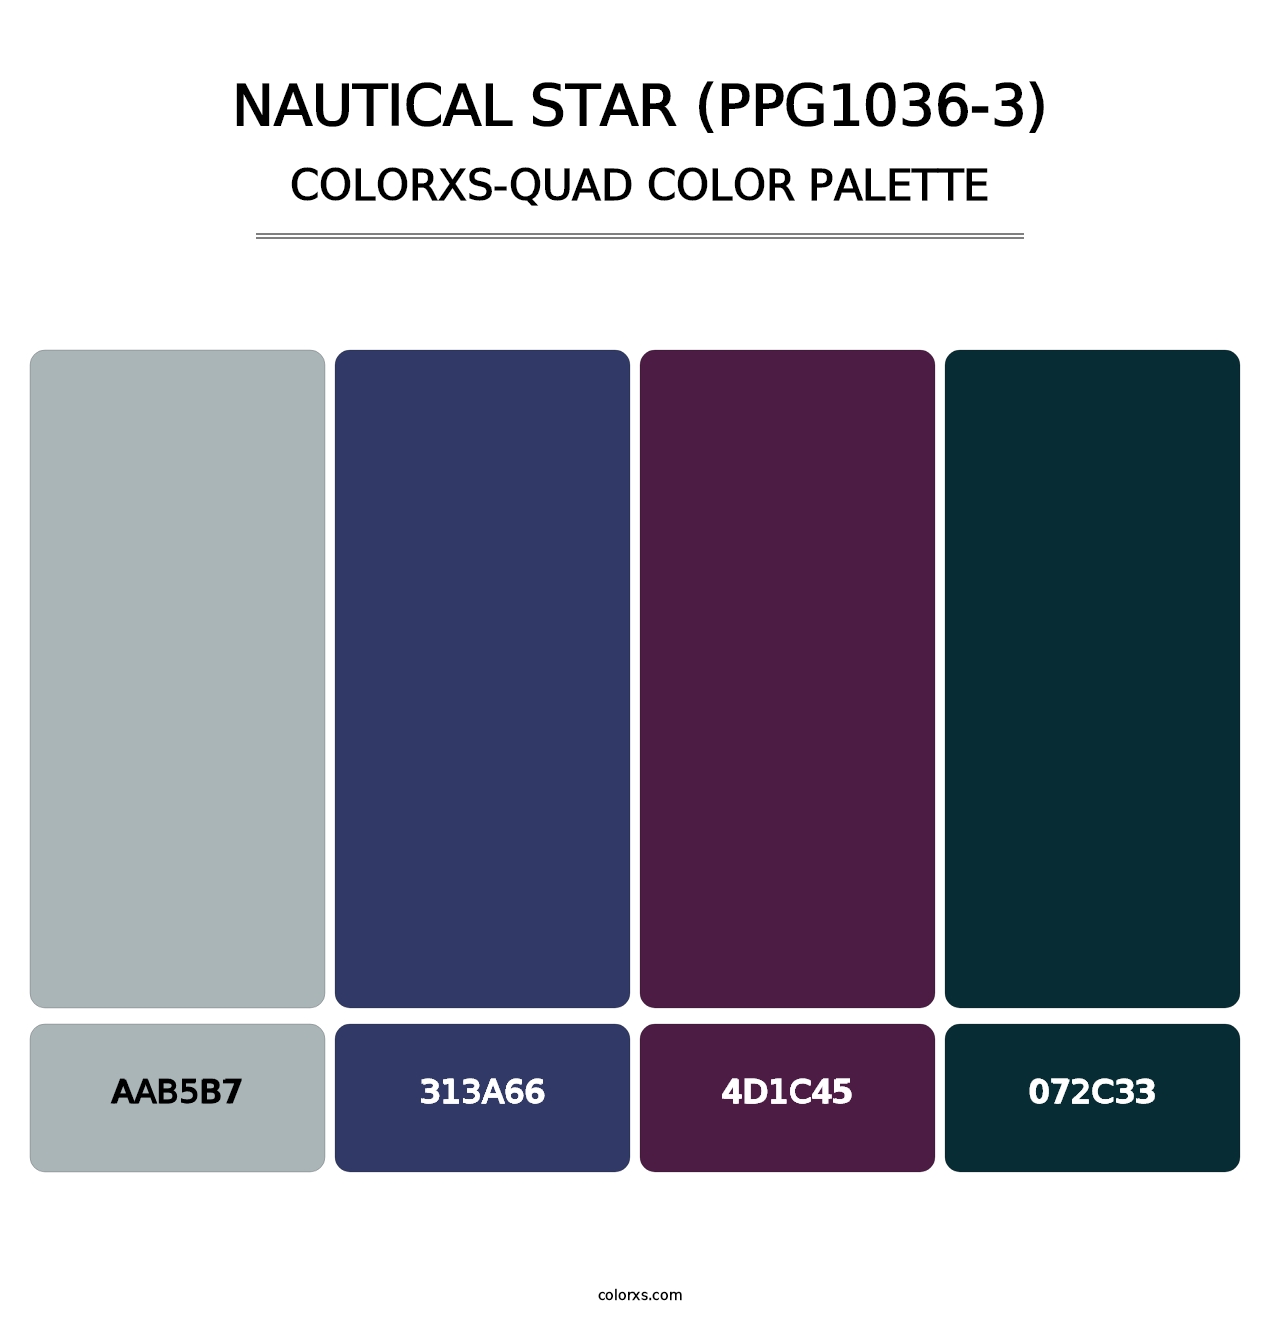 Nautical Star (PPG1036-3) - Colorxs Quad Palette